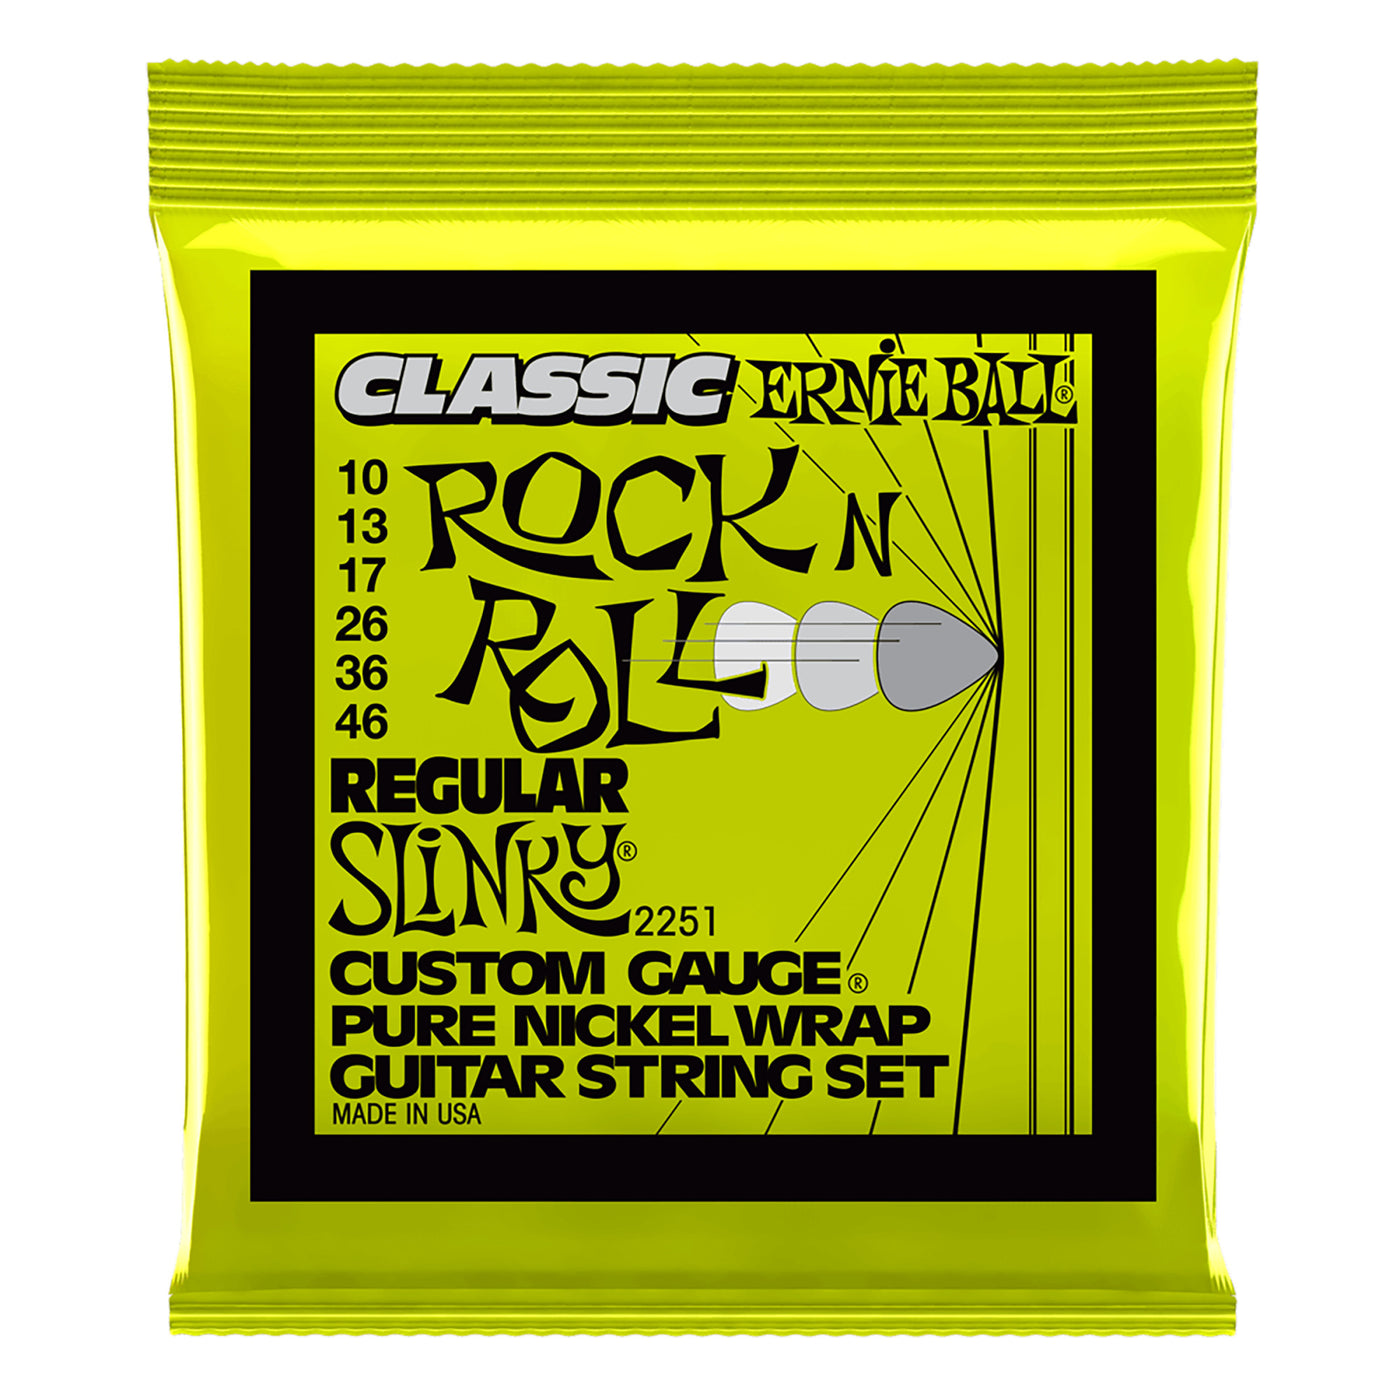 Ernie Ball Regular Slinky Classic Rock n Roll Pure Nickel Wrap Electric Guitar Strings, 10-46 Gauge- 6 Strings